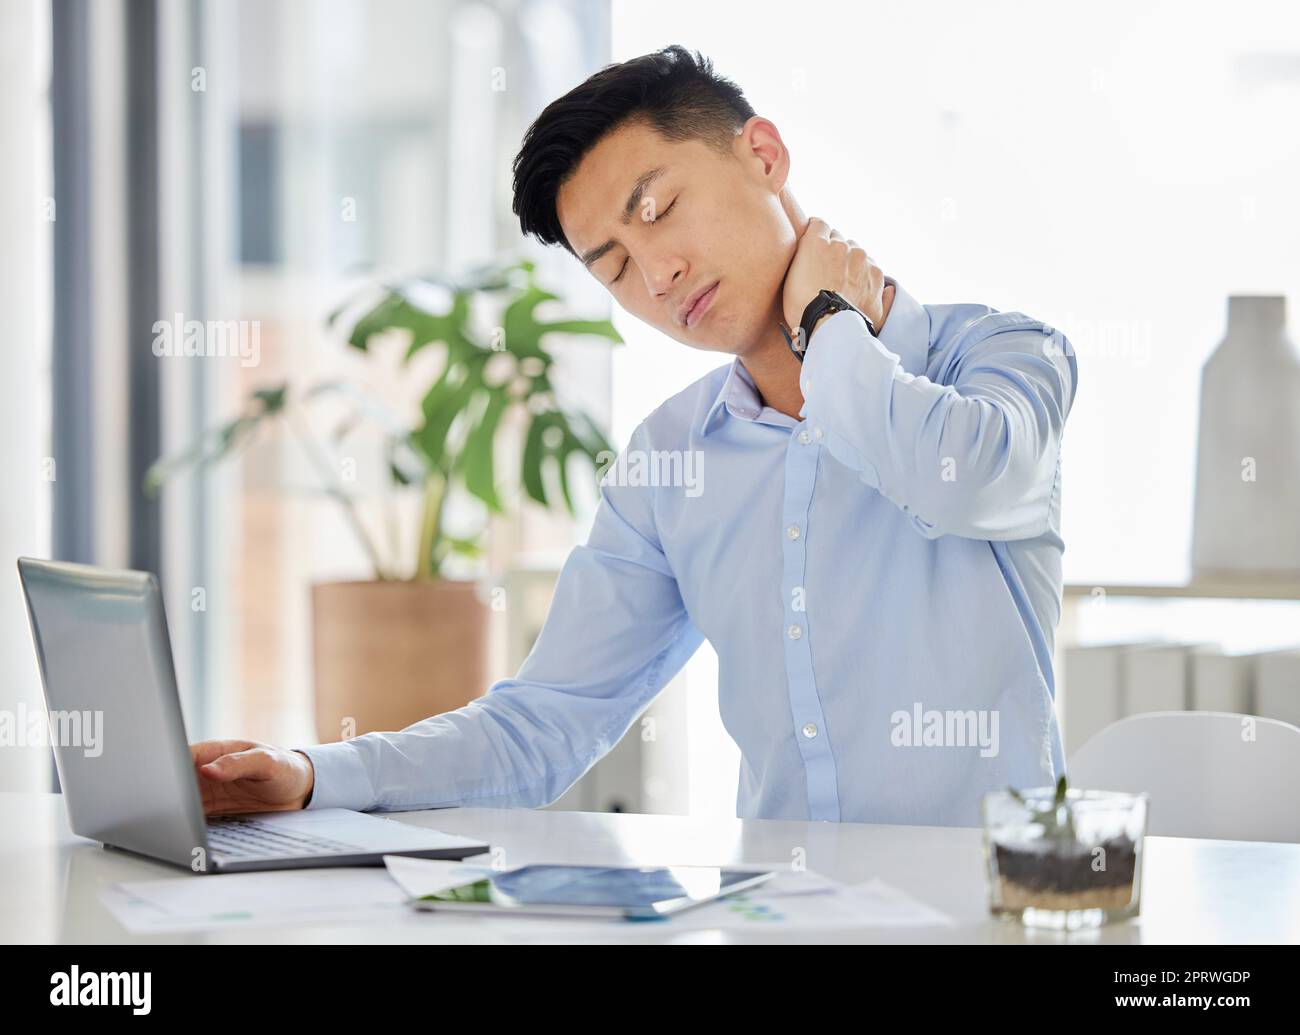 Stress, Burn-out und Nackenschmerzen asiatischer Mann mit Kopfschmerzen, Angst und Depressionen, der mit einem Laptop in einem Bericht, einer Steuer oder einem Audit im Büro arbeitet. Frustrierter und müder Geschäftsmann mit psychischer Gesundheit überarbeitet Stockfoto